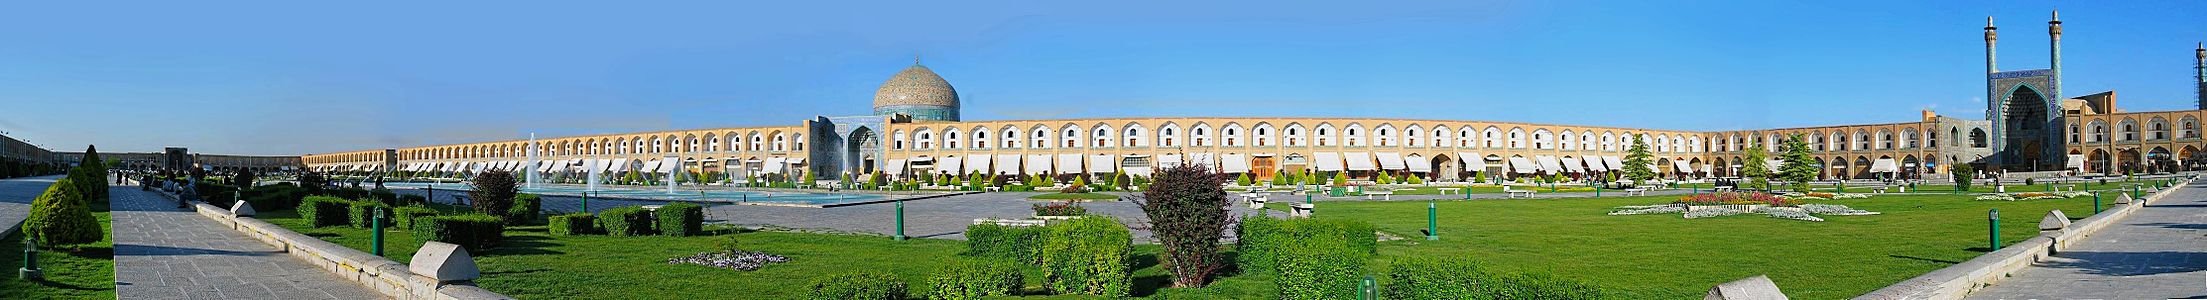 İsfahan, İran'da bulunan Nakş-ı Cihan Meydanı. Sağda Şah Camii, karşıda ise Şeyh Lütfullah Camii yer almaktadır. (Üreten:Nicolas Hadjisavvas)